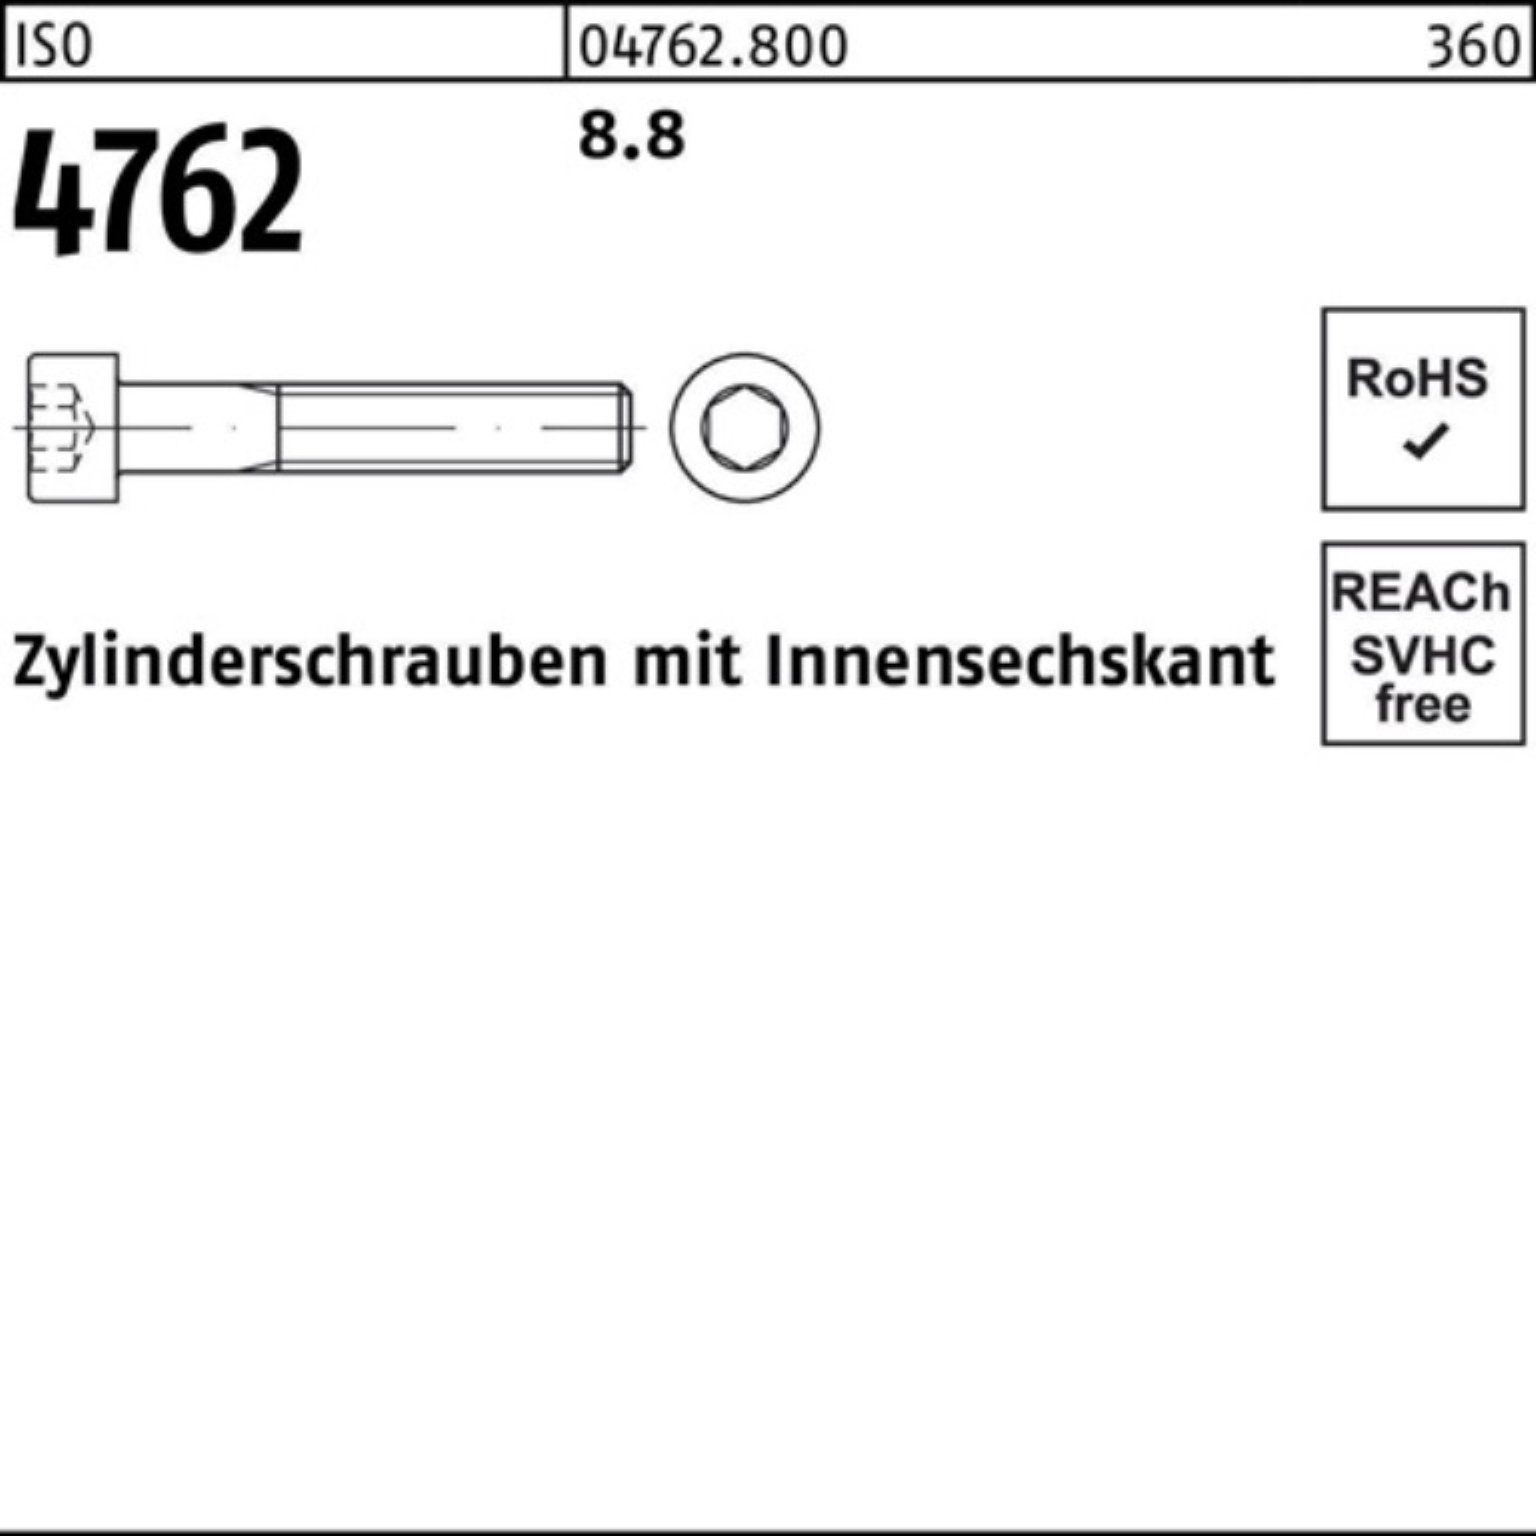 Innen-6kt 1 Zylinderschraube 4762 Zylinderschraube I Stück 450 Reyher 100er Pack 8.8 M24x ISO